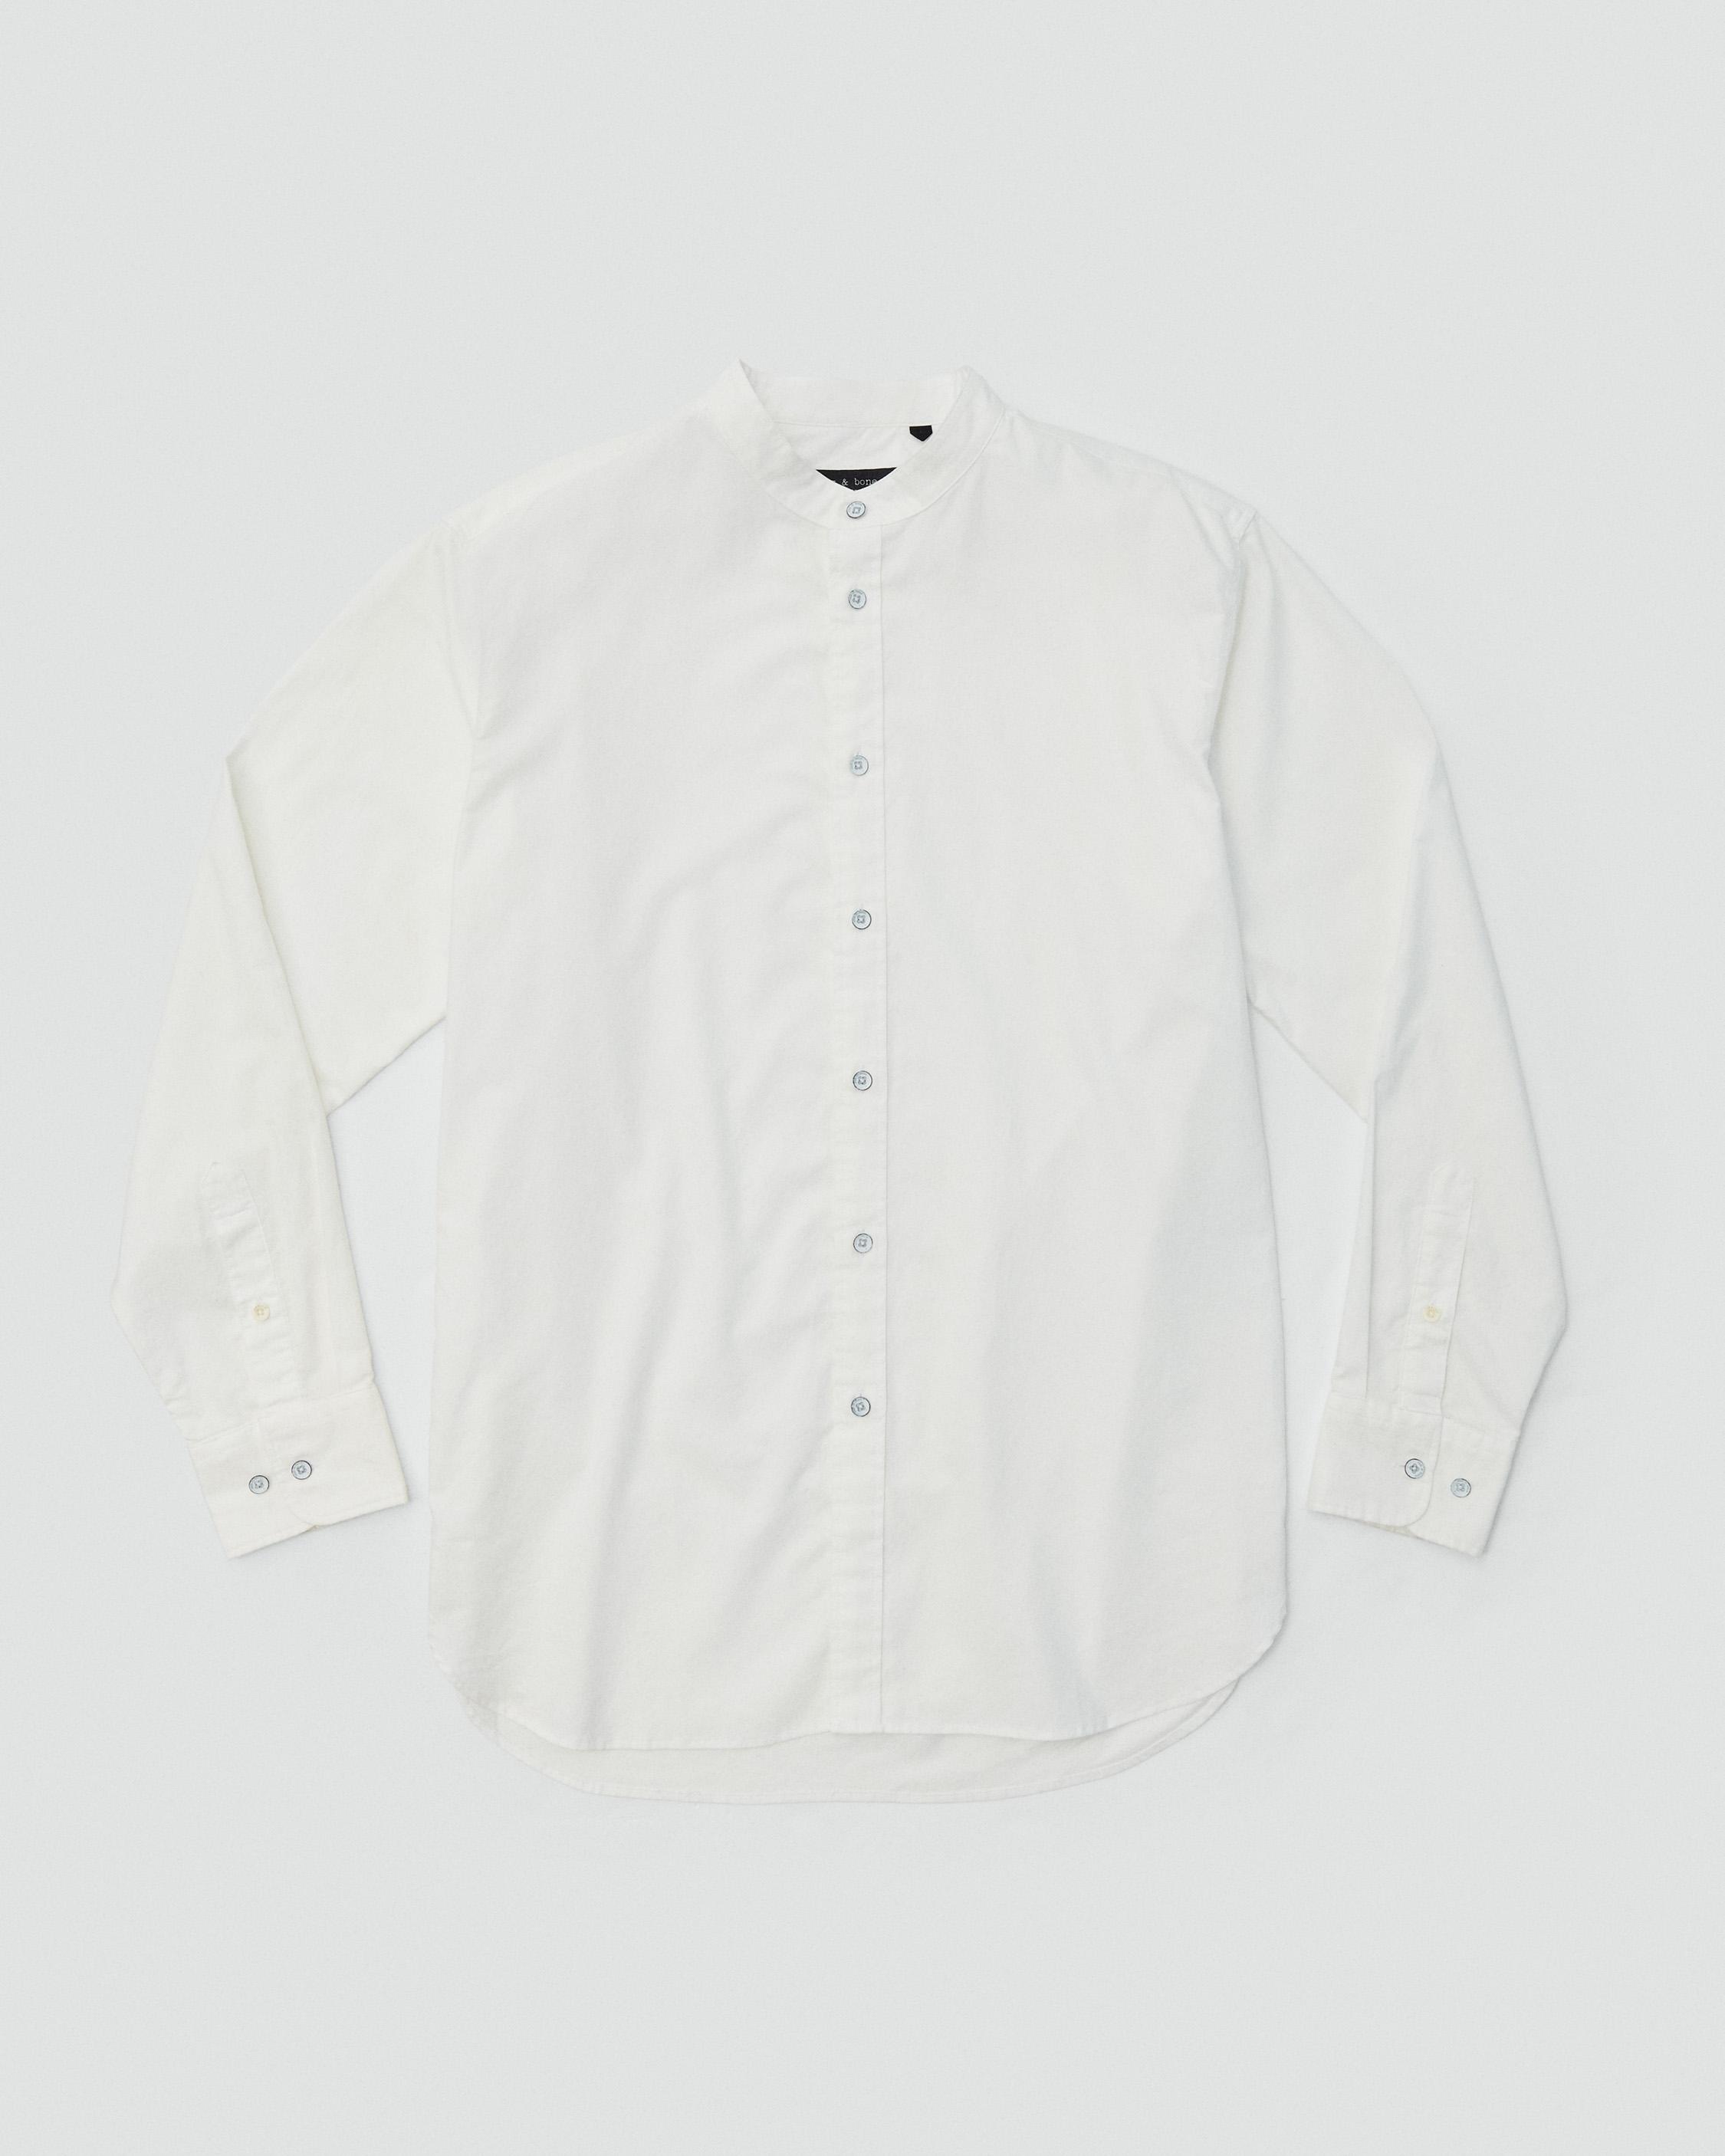 Landon Cotton Oxford Shirt